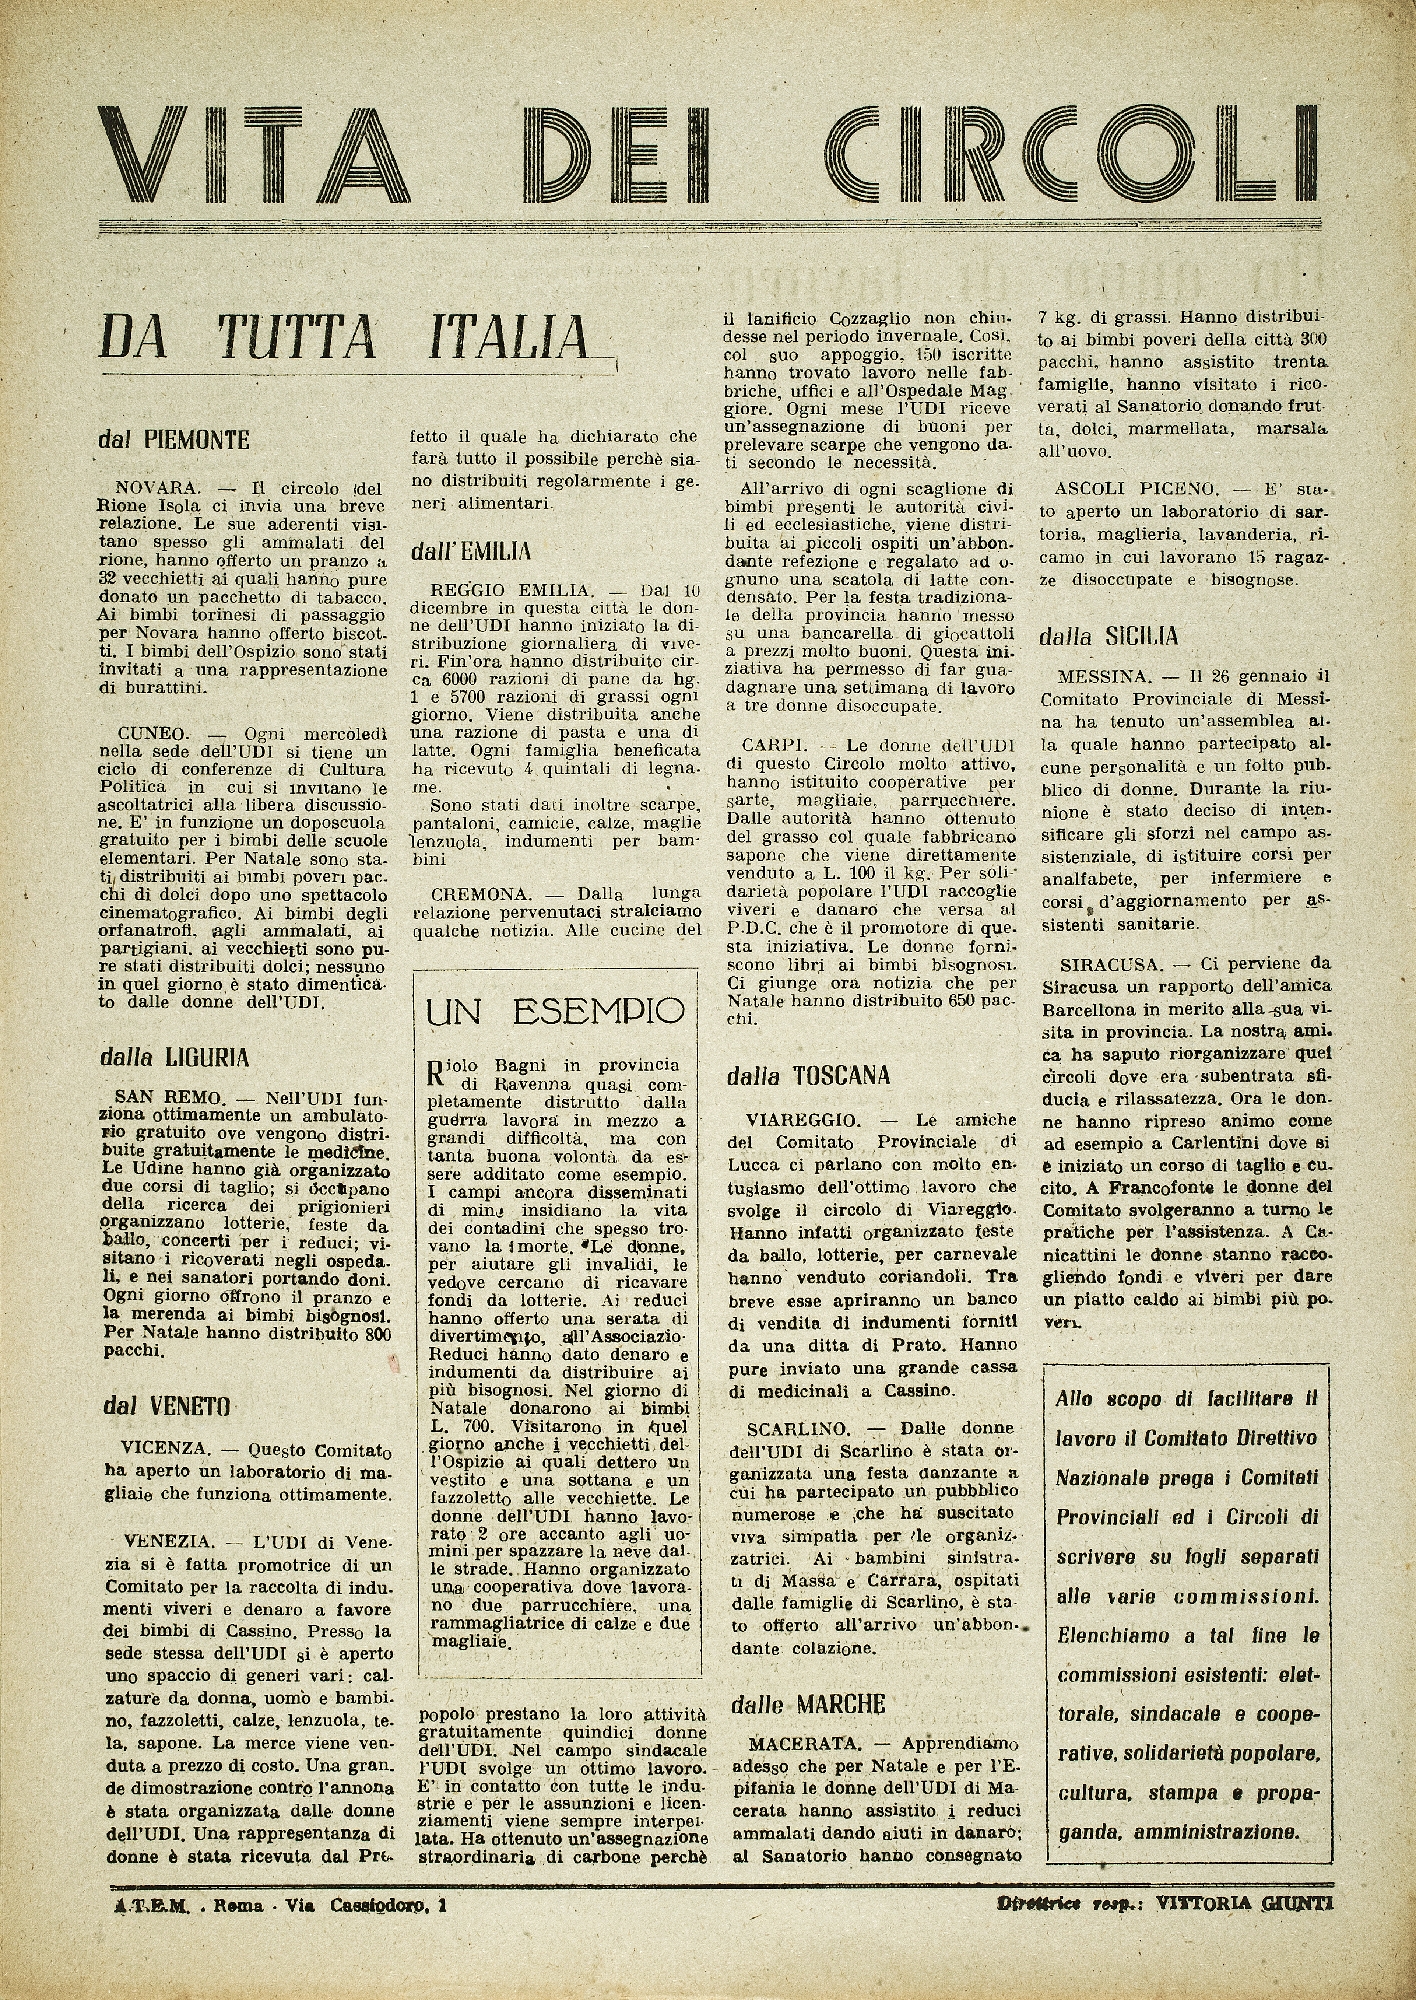 Foto: Un piano di lavoro per la ricostruzione dell’Italia dopo la guerra: lavoro, diritti, educazione.